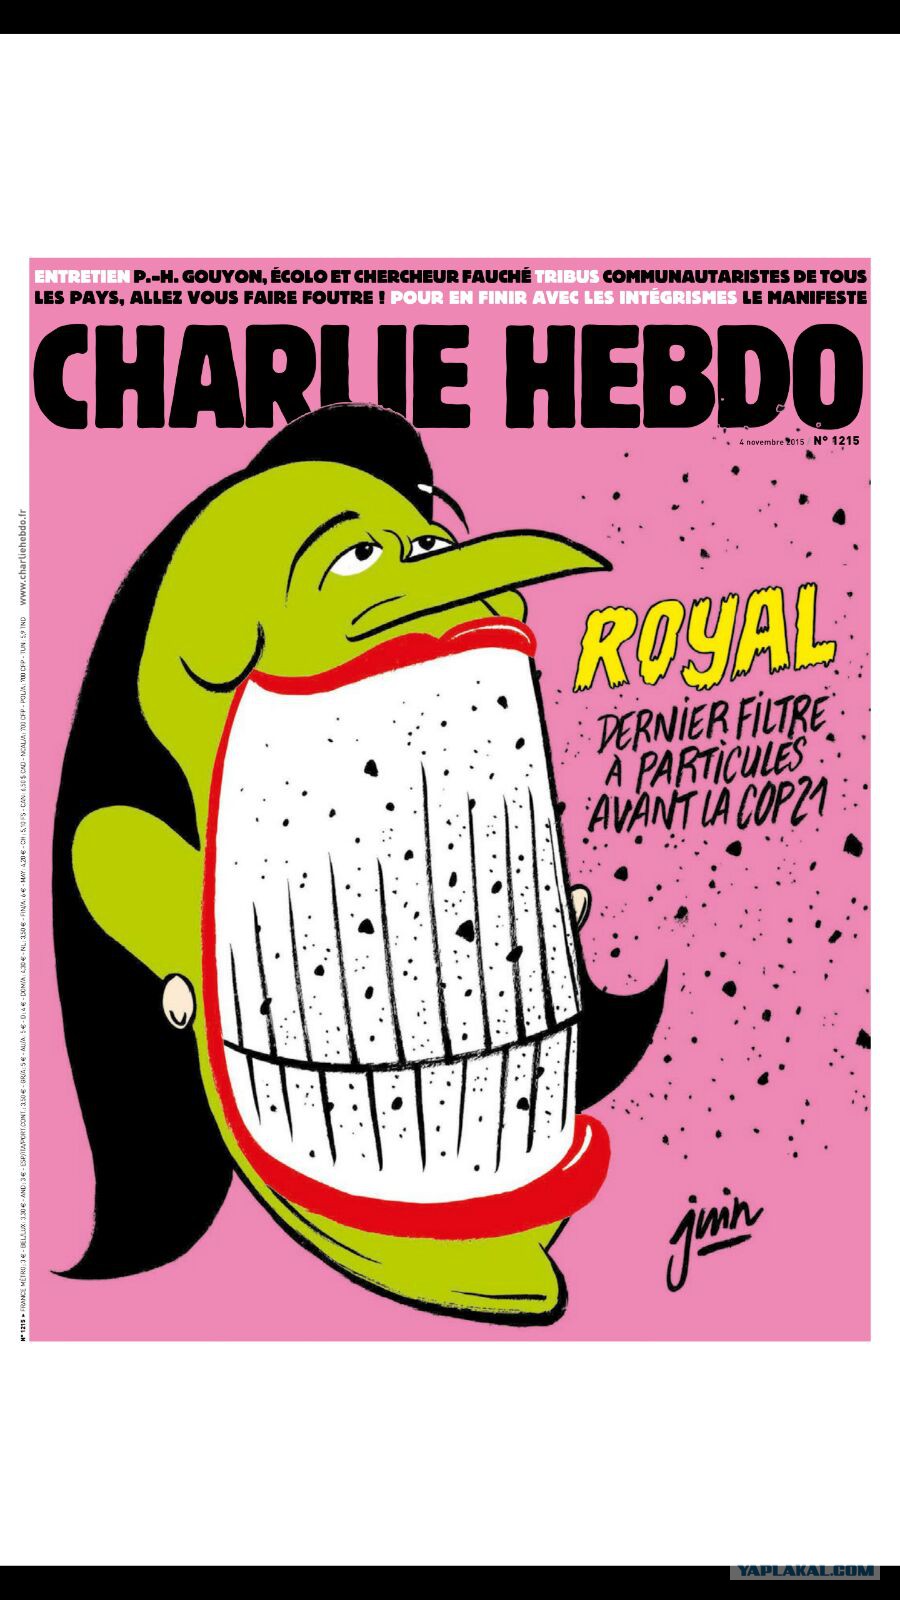     Charlie Hebdo